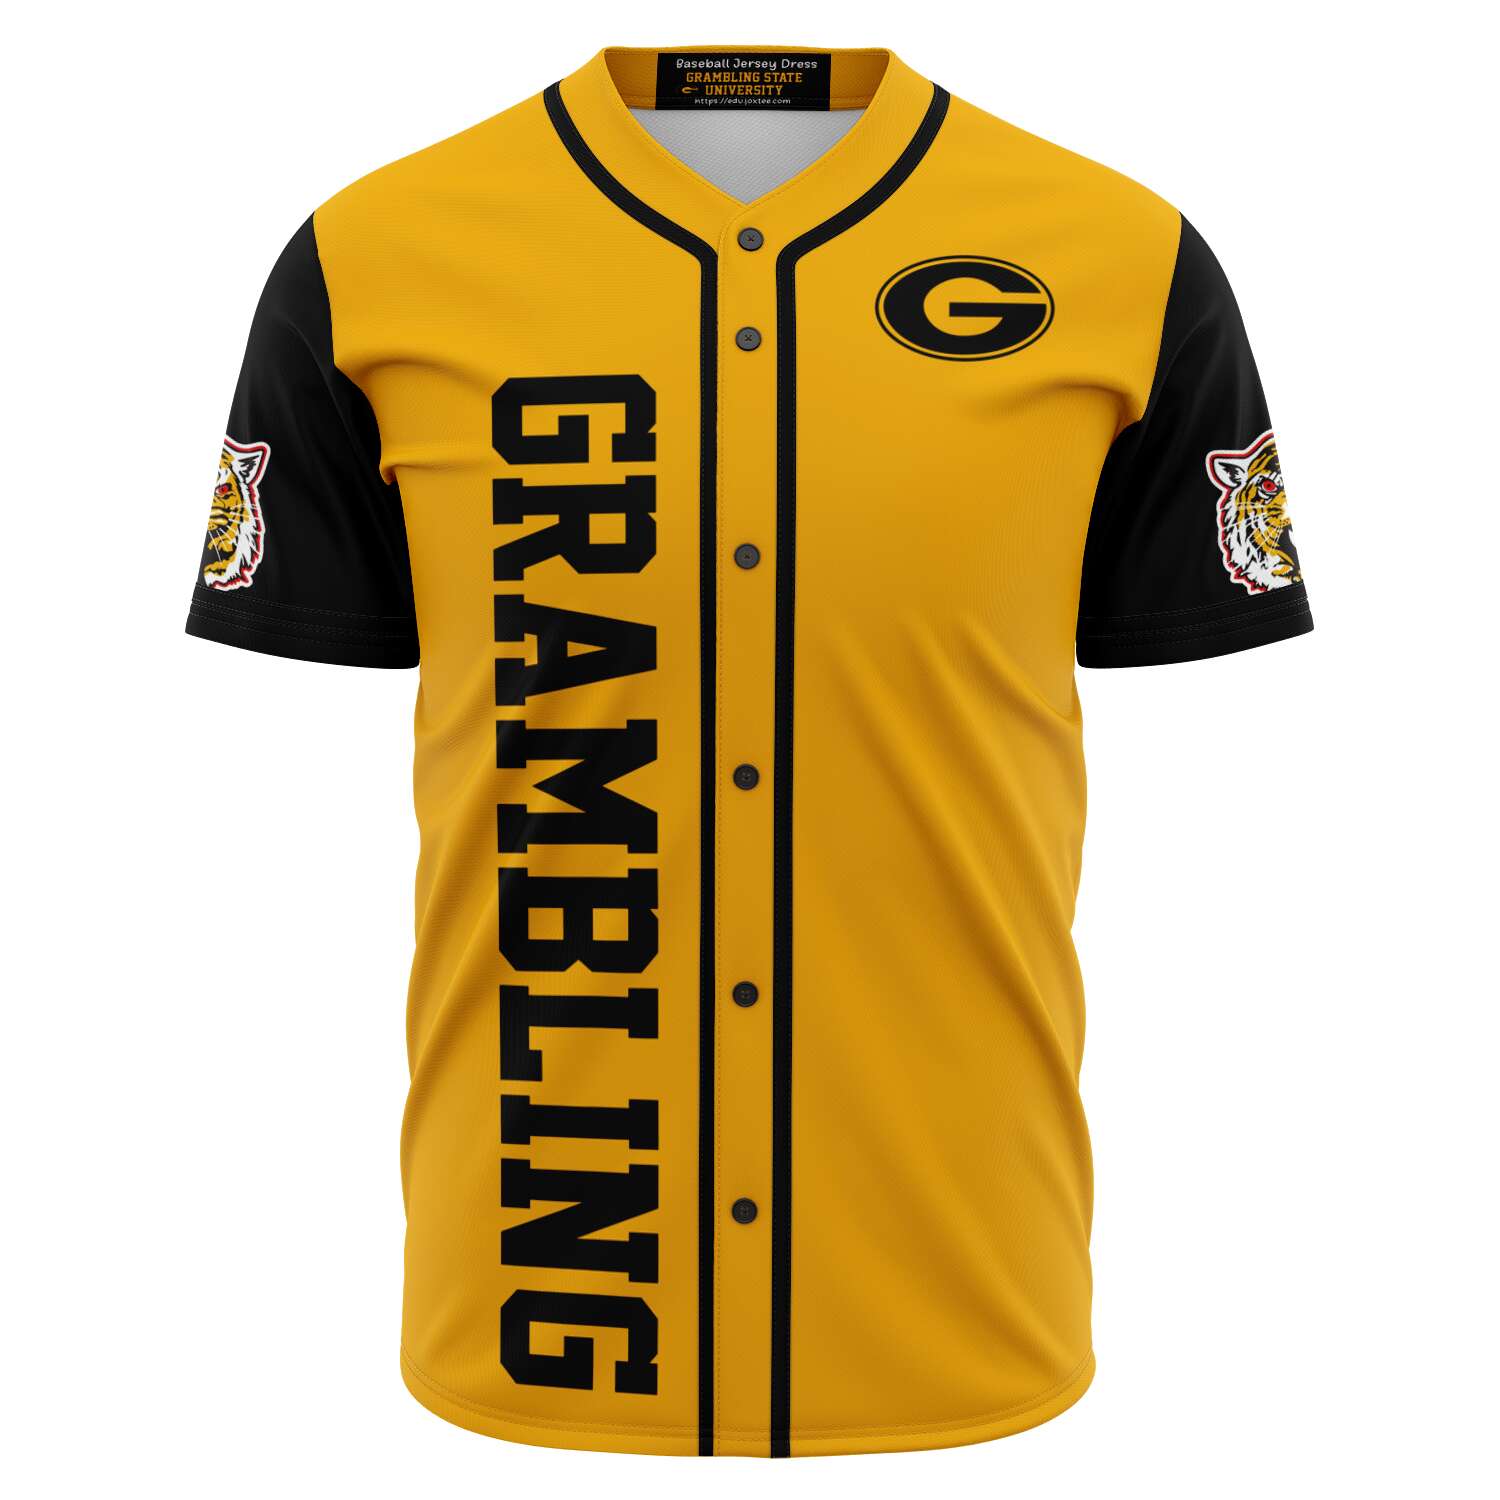 Grambling Tigers baseball jersey v4361